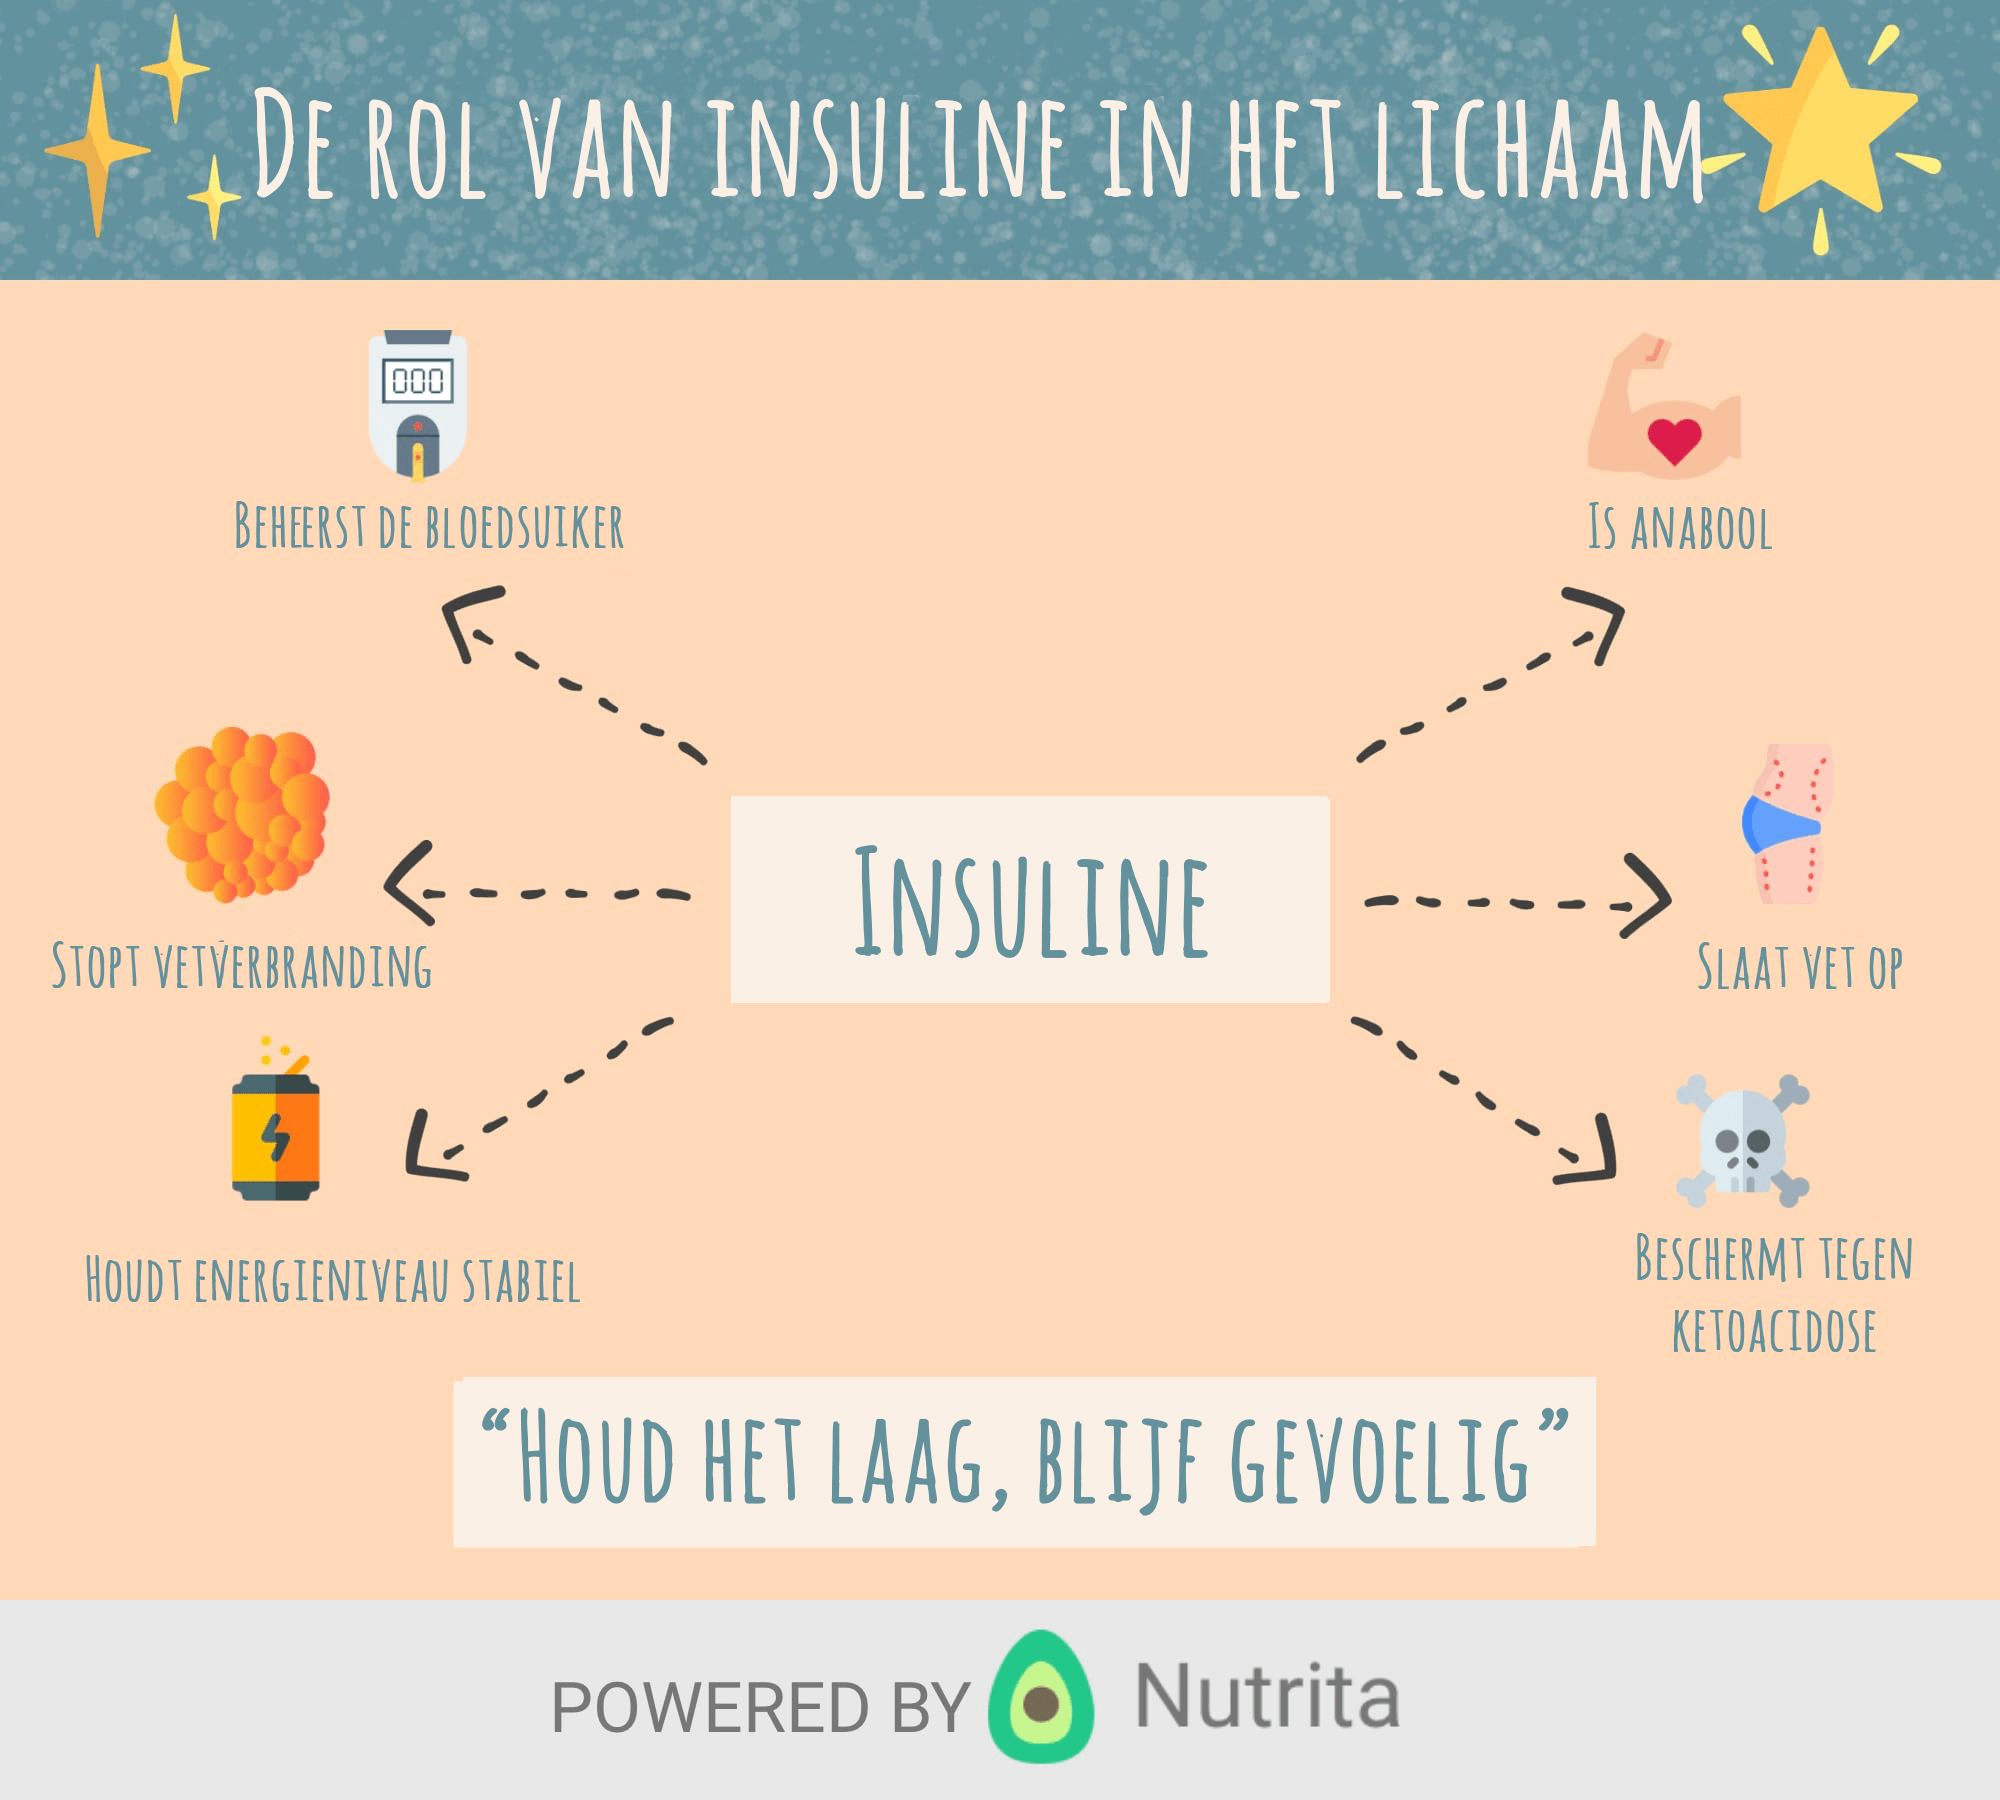 De rol van insuline in het lichaam